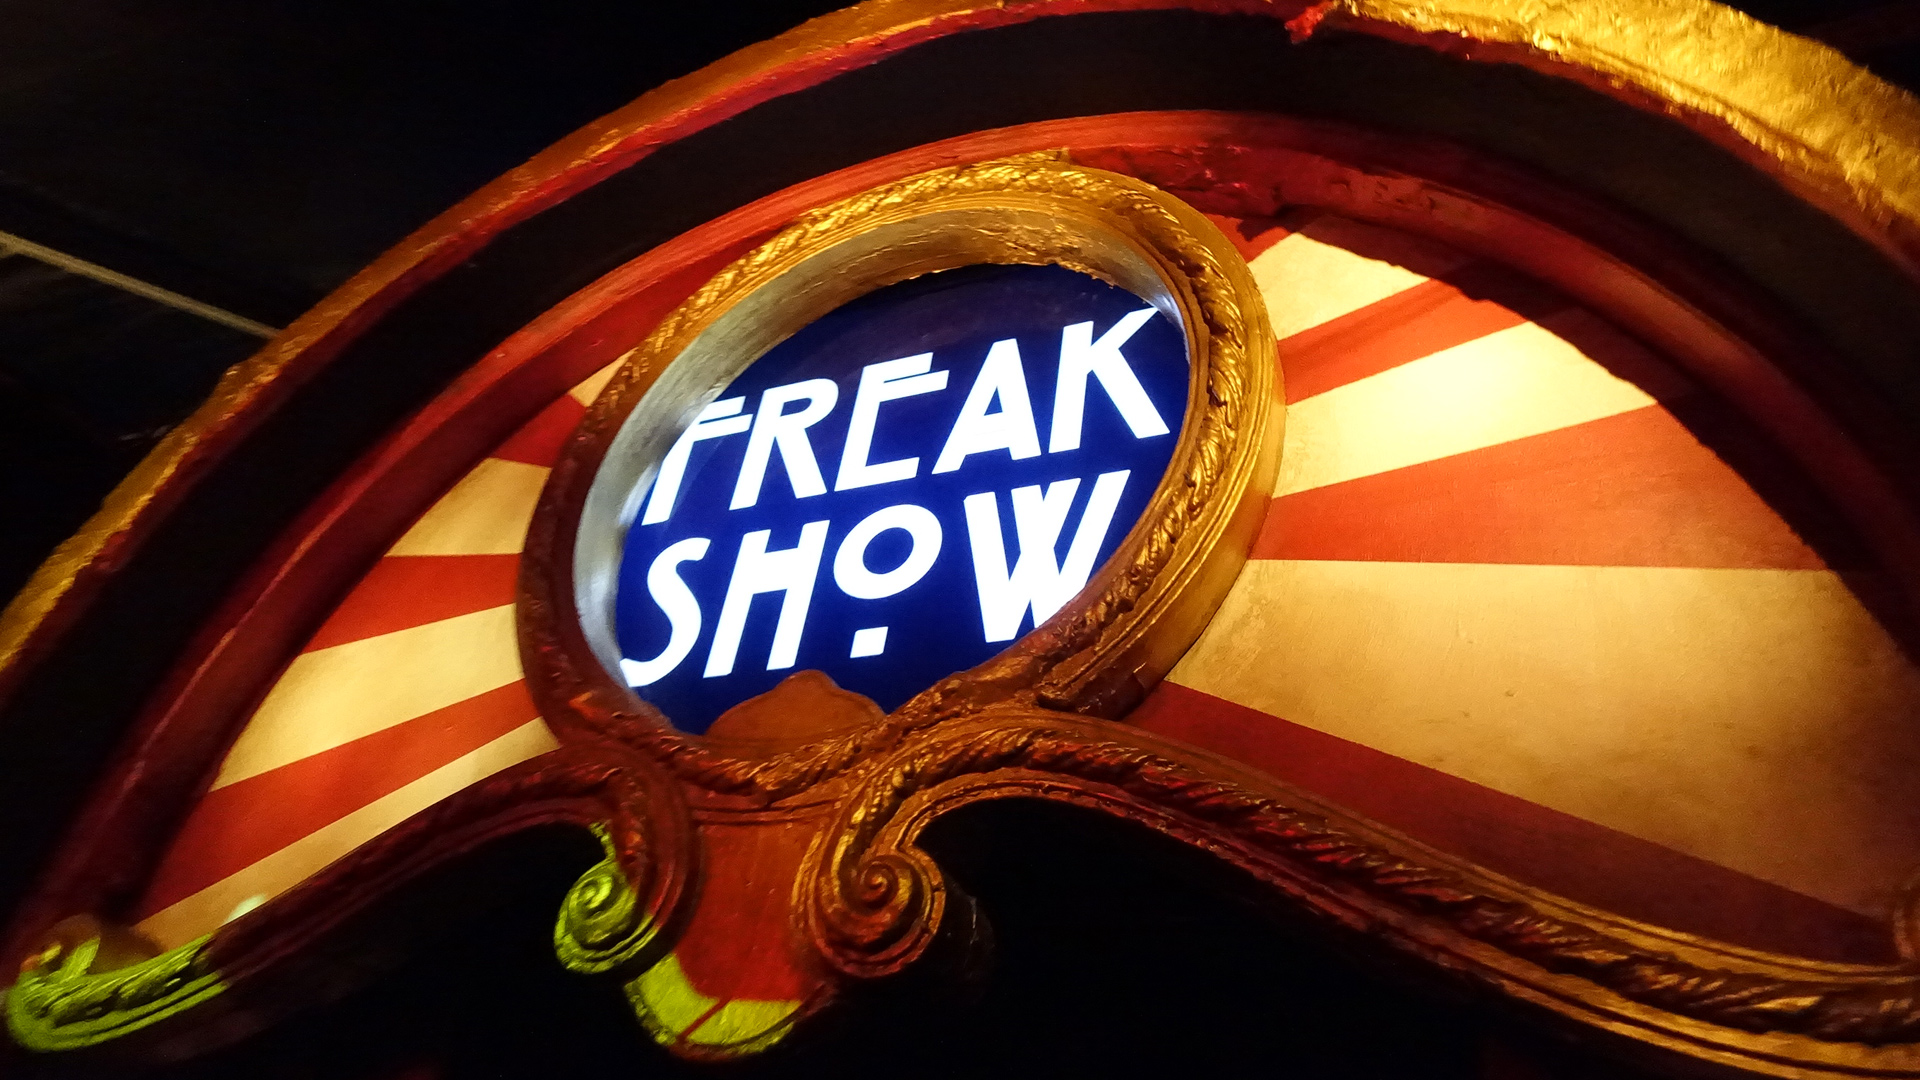 Evento “Halloween Horror Nights” en Universal Studios Hollywood dedicado a la temporada “Freak Show” de la serie American Horror Story.